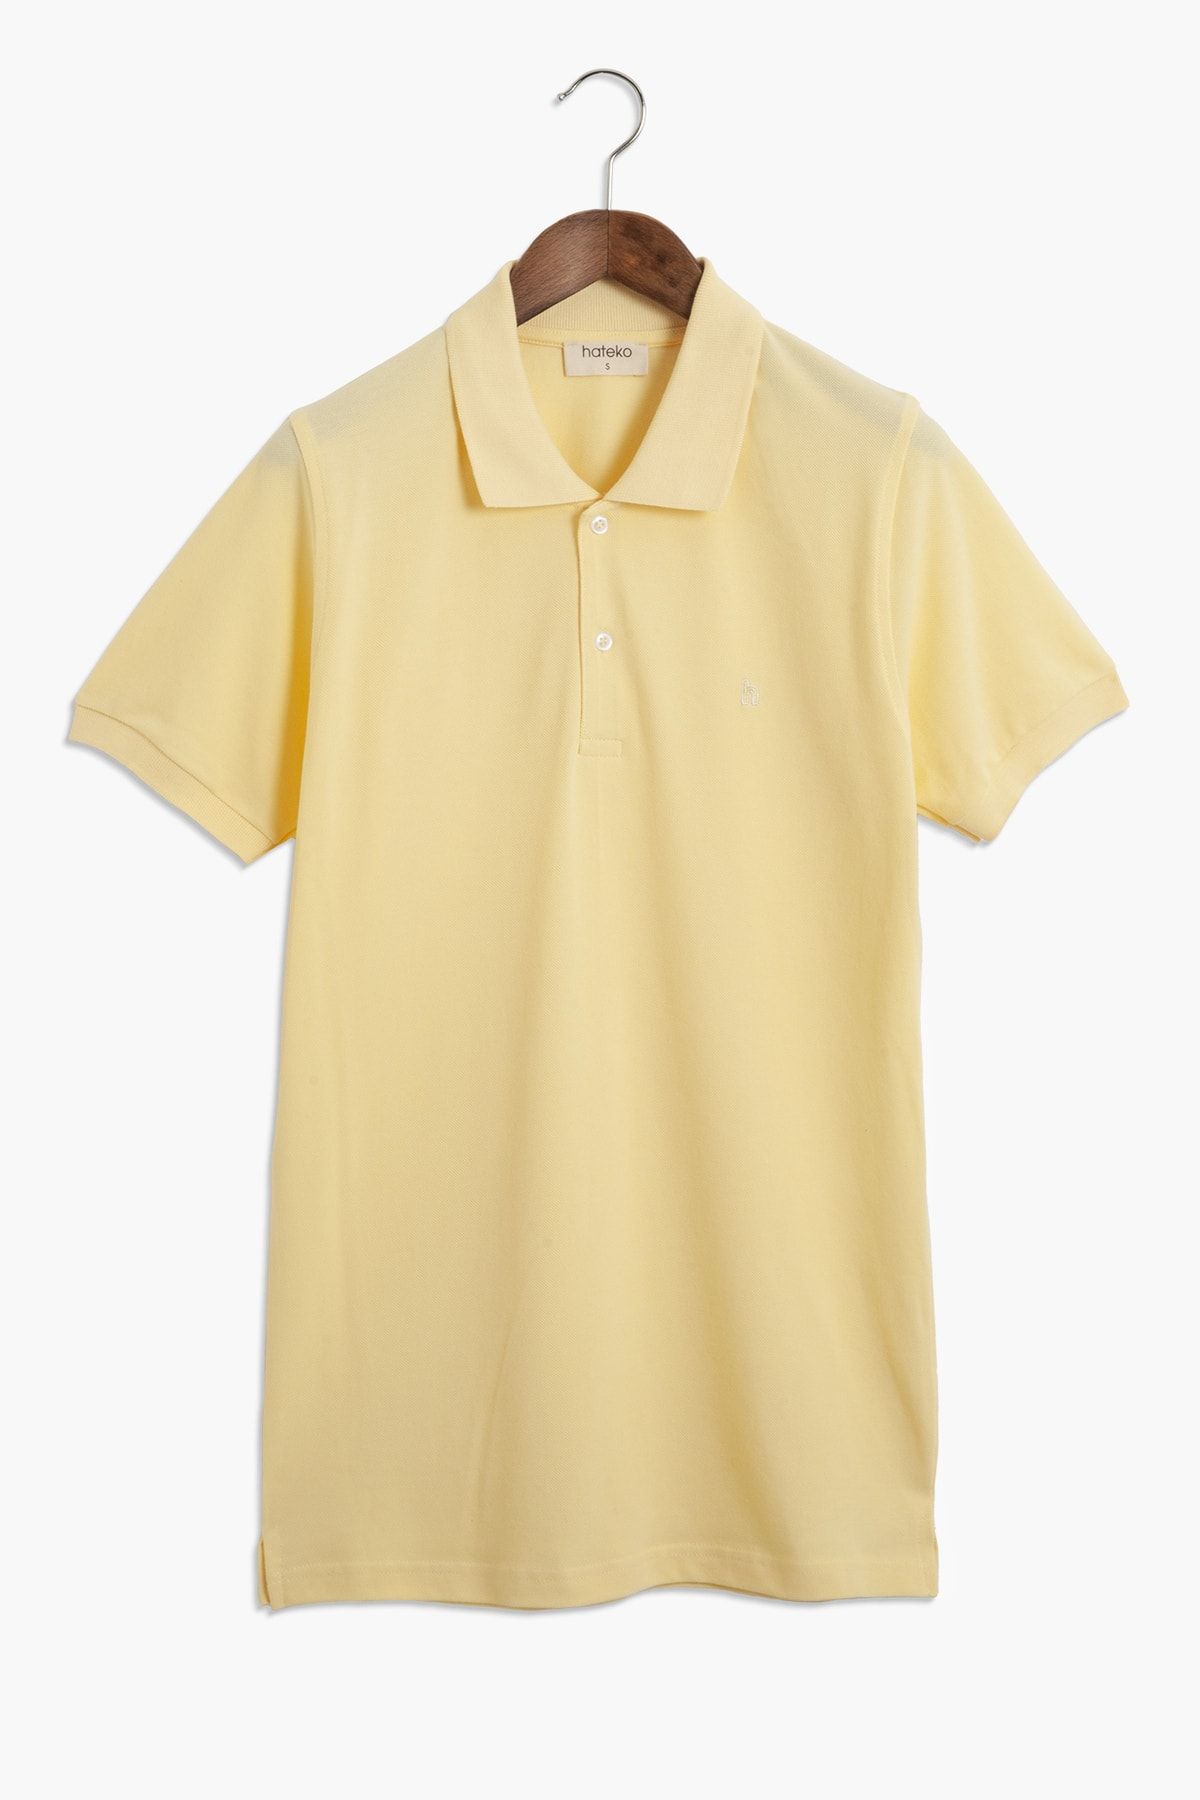 Hateko %100 Pamuk Klasik Kesim Açık Sarı Polo Yaka Tişört